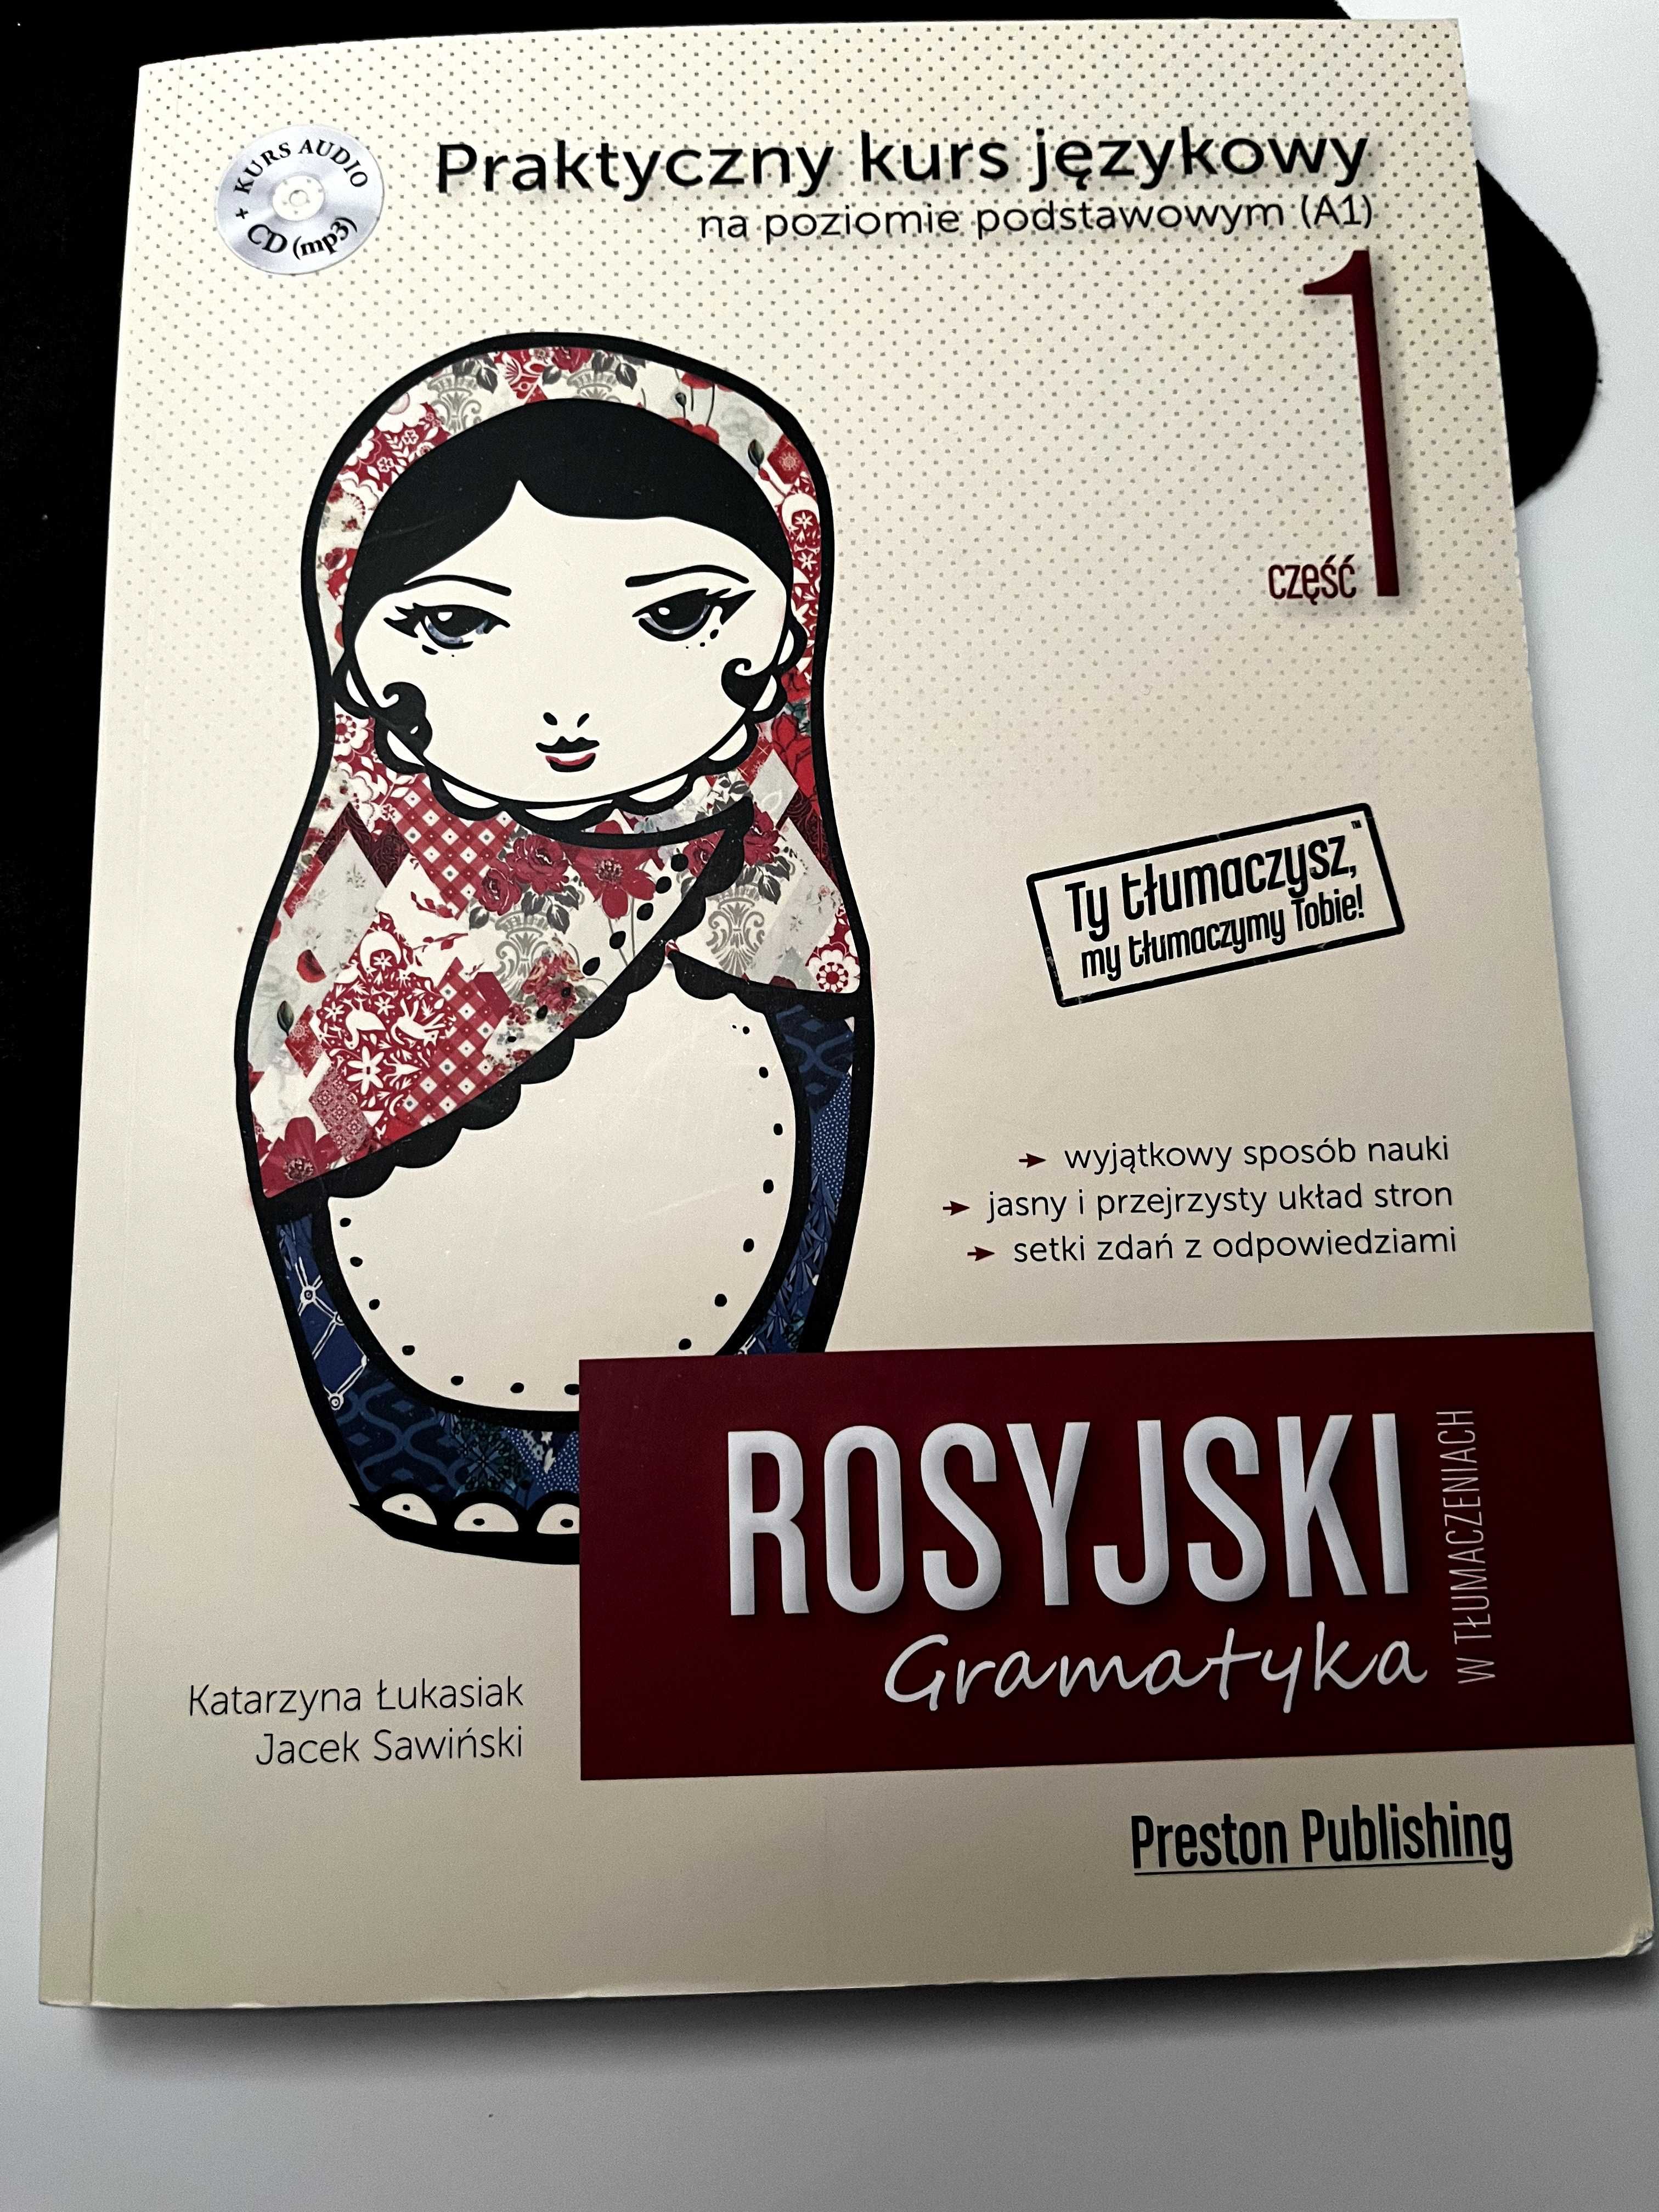 Preston Publishing - Gramatyka Rosyjski w tłumaczeniach 1